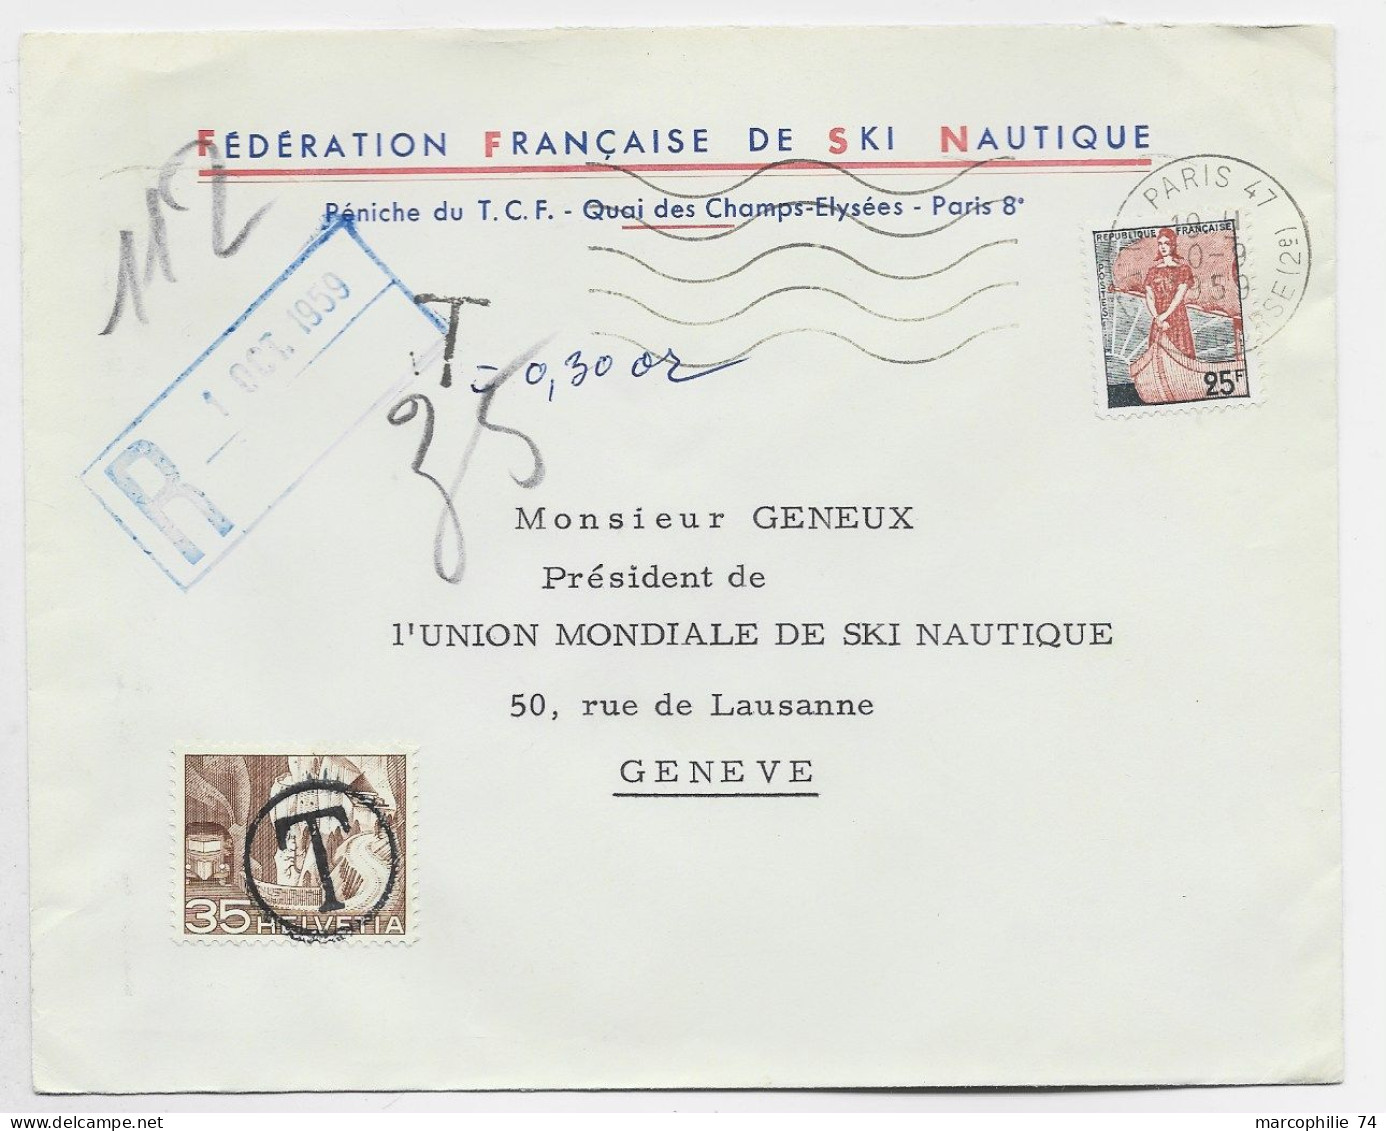 FRANCE LETTRE COVER ENTETE FEDERATION FRANCAISE DE SKI NAUTIQUE MARIANNE A LE NEF 25FR PARIS 1959 POUR SUISSE TAXE 35C - Waterski